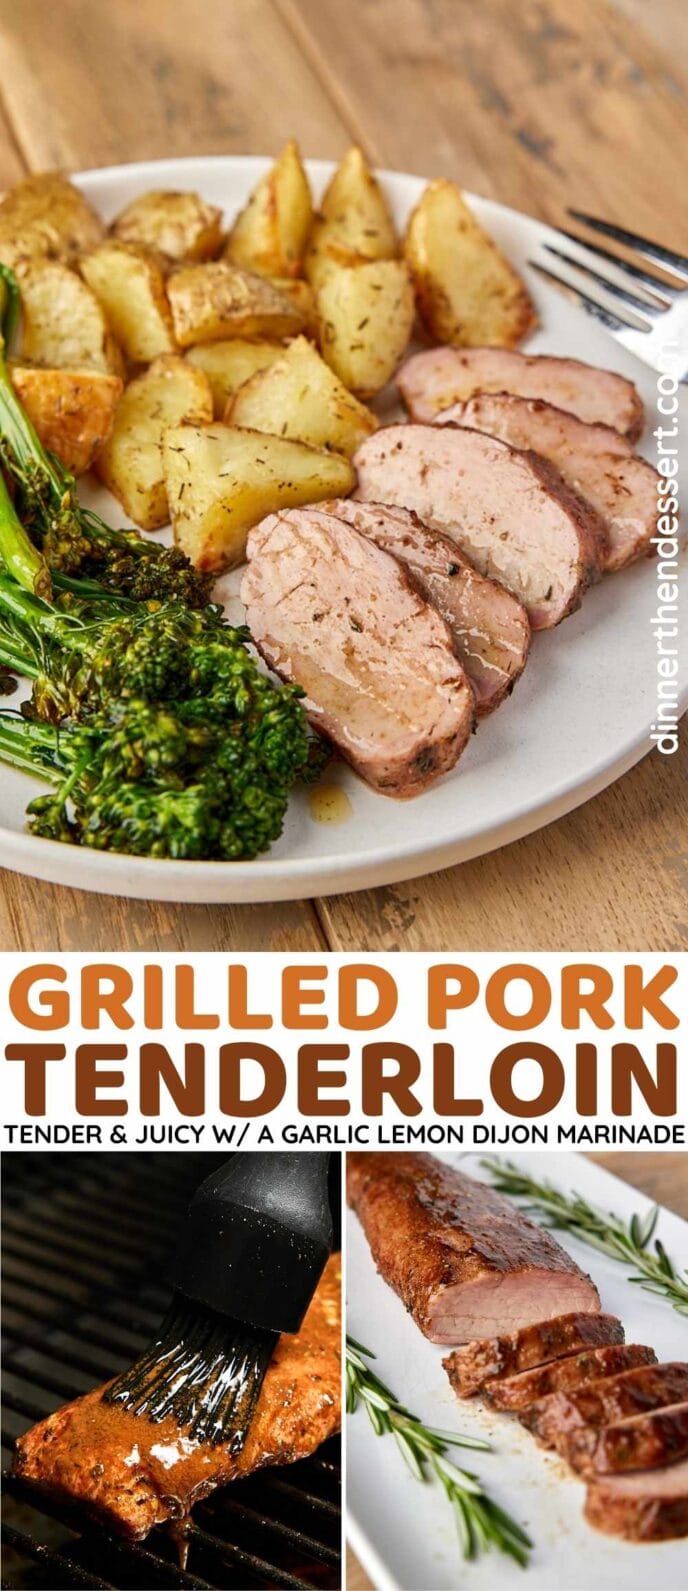 Grilled Pork Tenderloin Collage